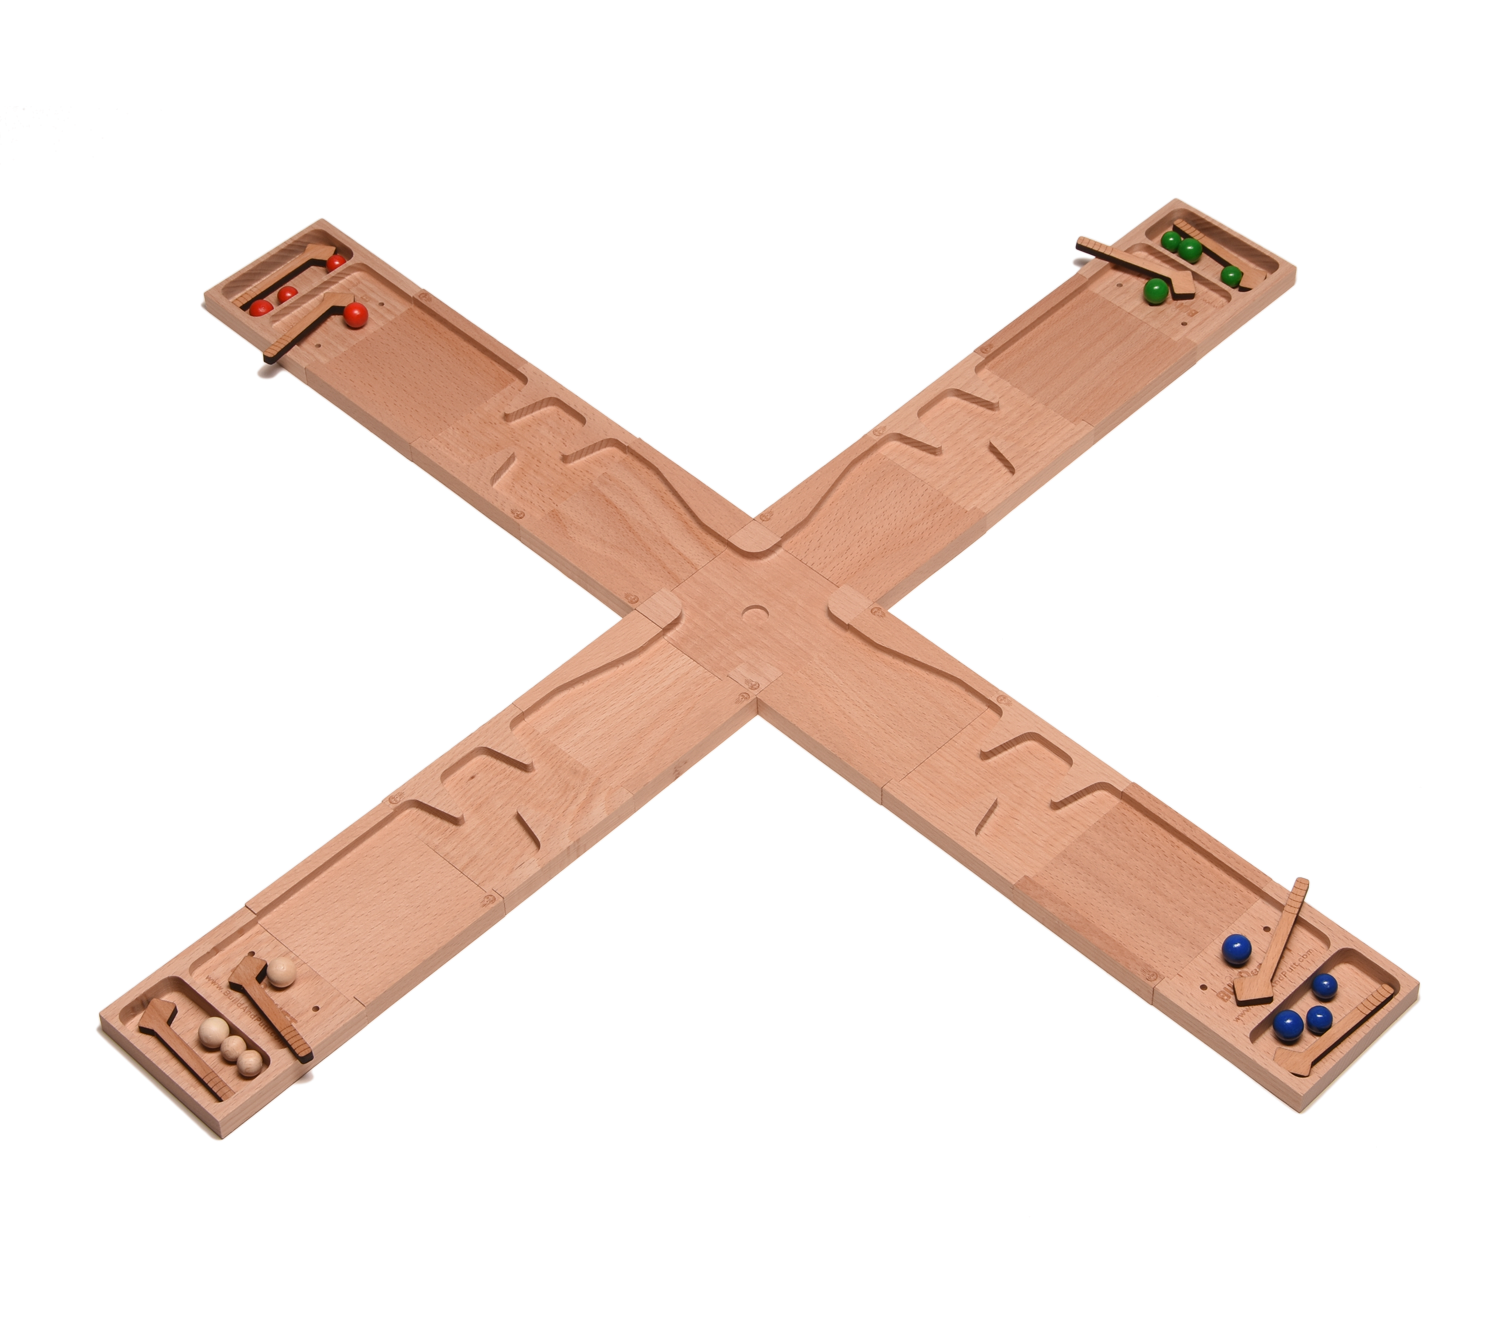 4 Spielbahnen in Kreuzform angeordnet spielen auf das Loch in der Mitte